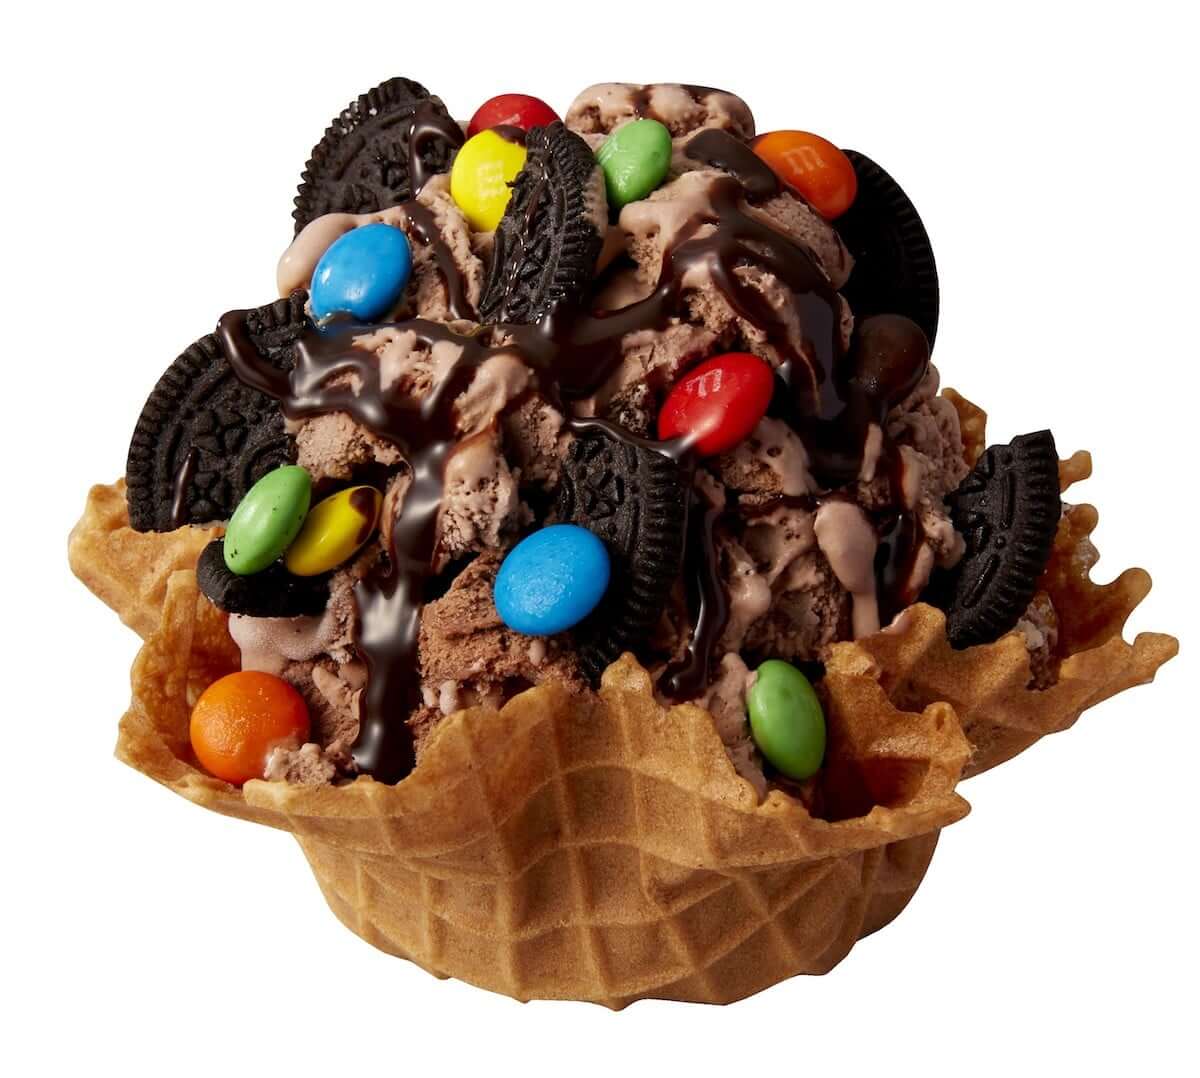 コールドストーン、寒い季節に食べたくなる「濃厚アイスクリーム」3種類を期間限定で発売！！ gourmet181030_coldstone_04-1200x1078